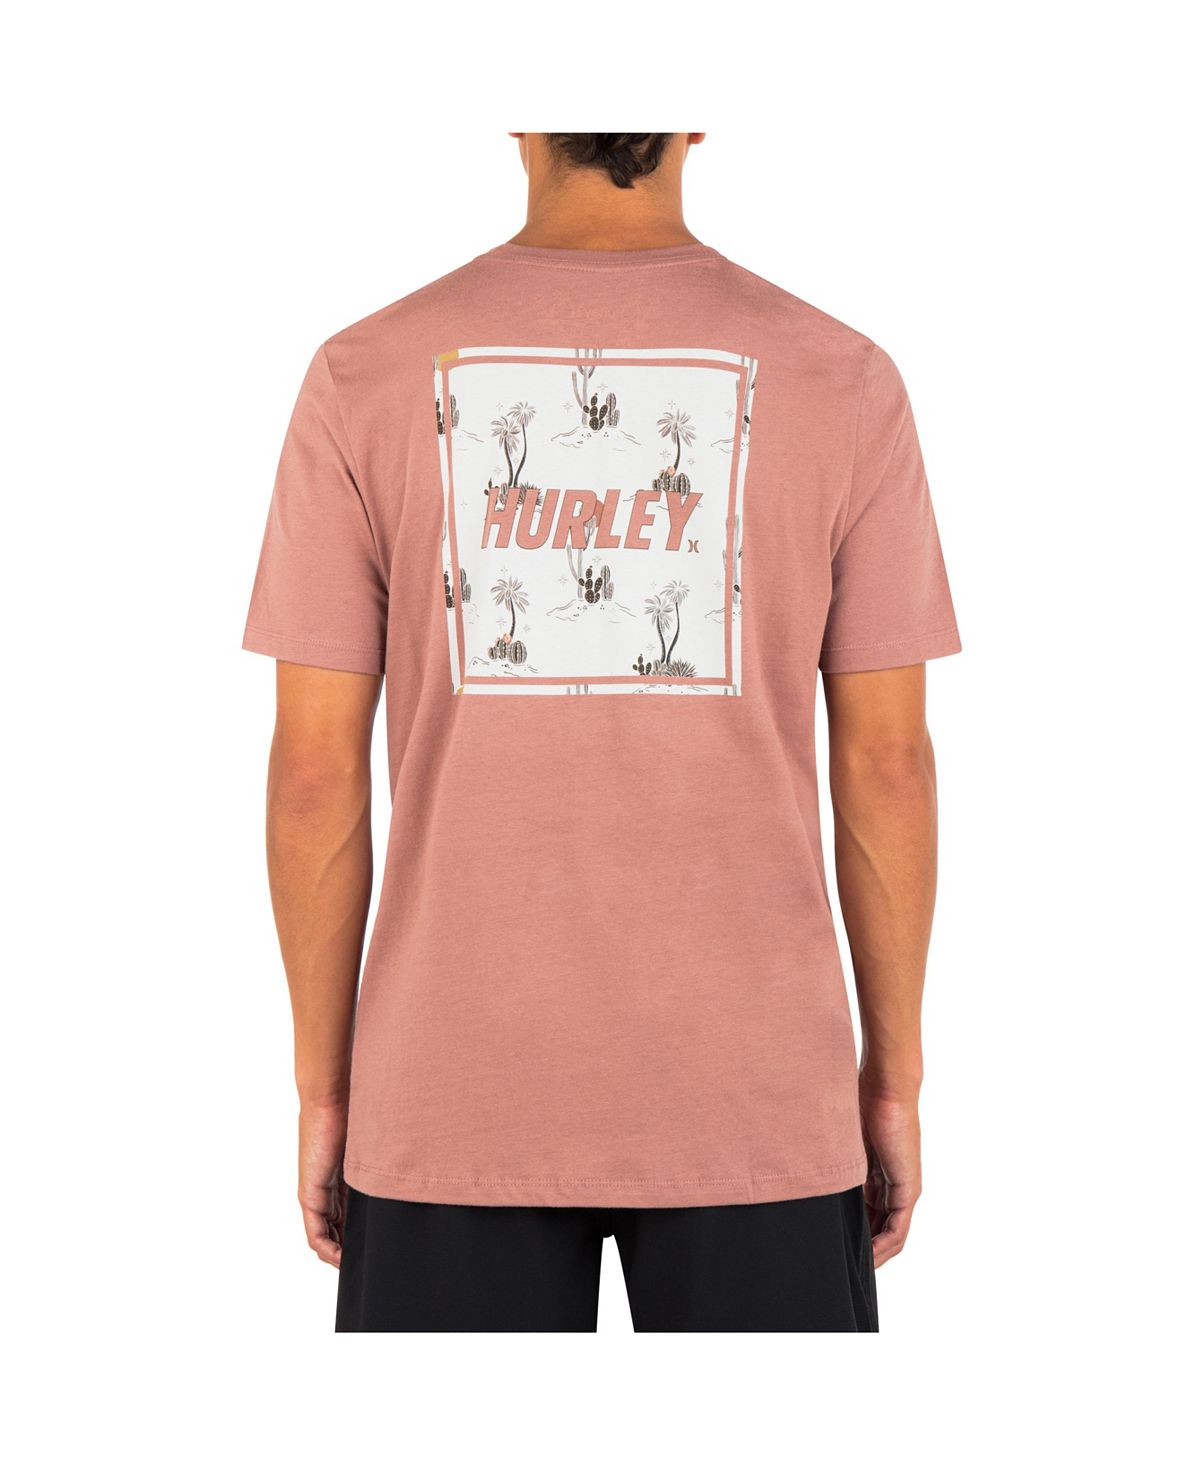 Мужская повседневная футболка с коротким рукавом Four Corners Hurley мужская повседневная футболка с коротким рукавом для укулеле hurley тан бежевый